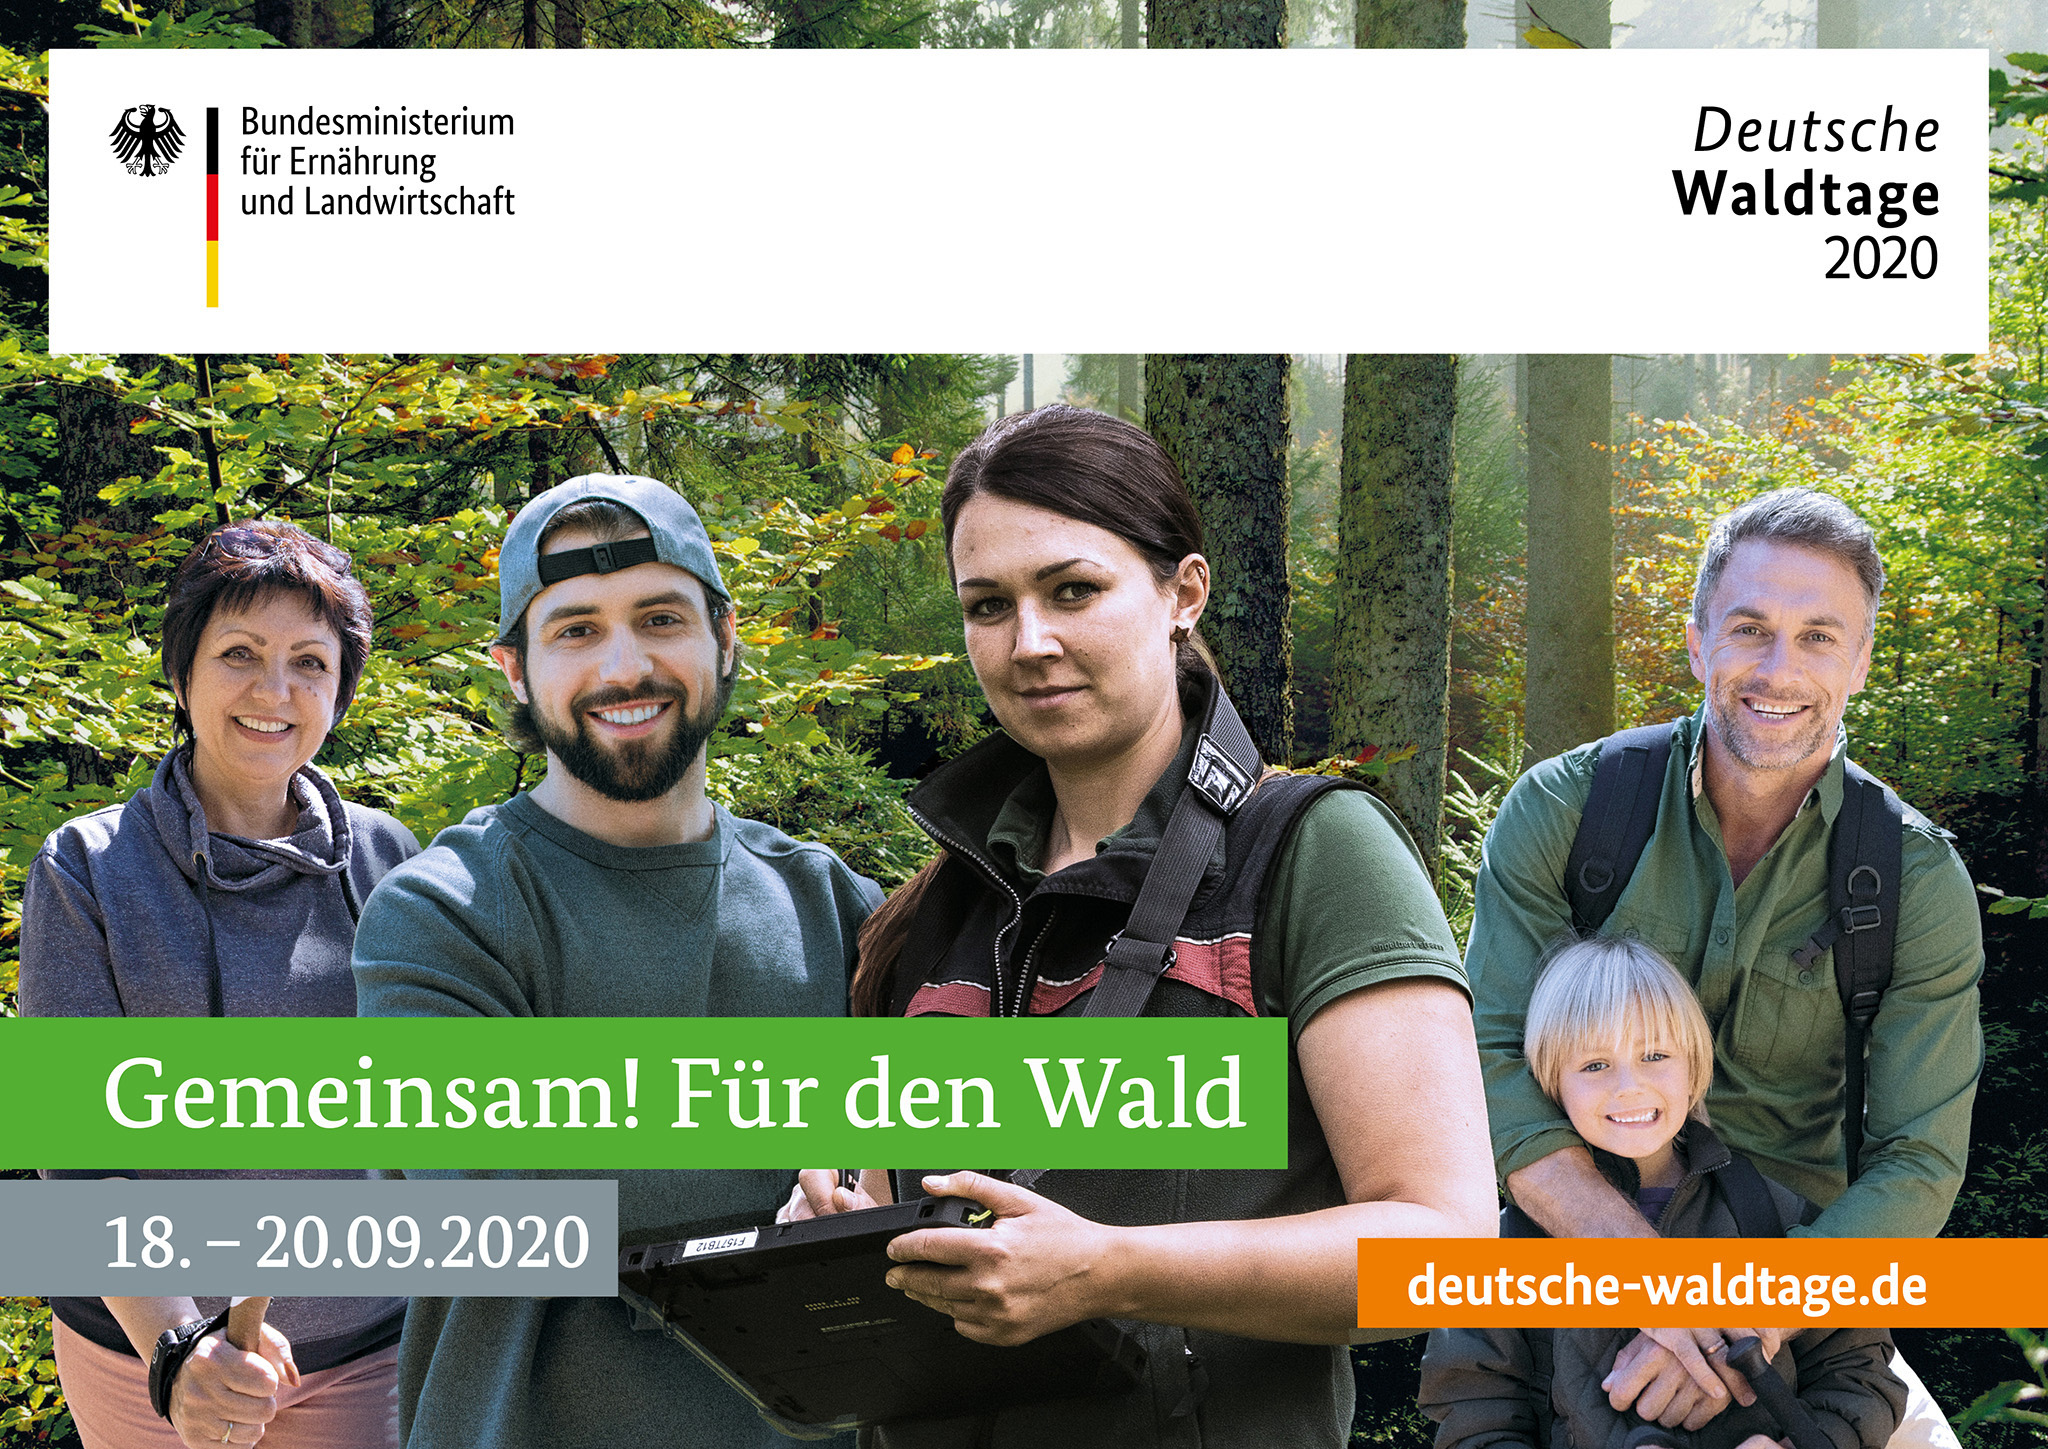 „Gemeinsam! Für den Wald" lautet das Motto der Deutschen Waldtage 2020, die im September zu vielfältigen regionalen Veranstaltungen und Mitmachaktionen einladen. Quelle: BMEL

